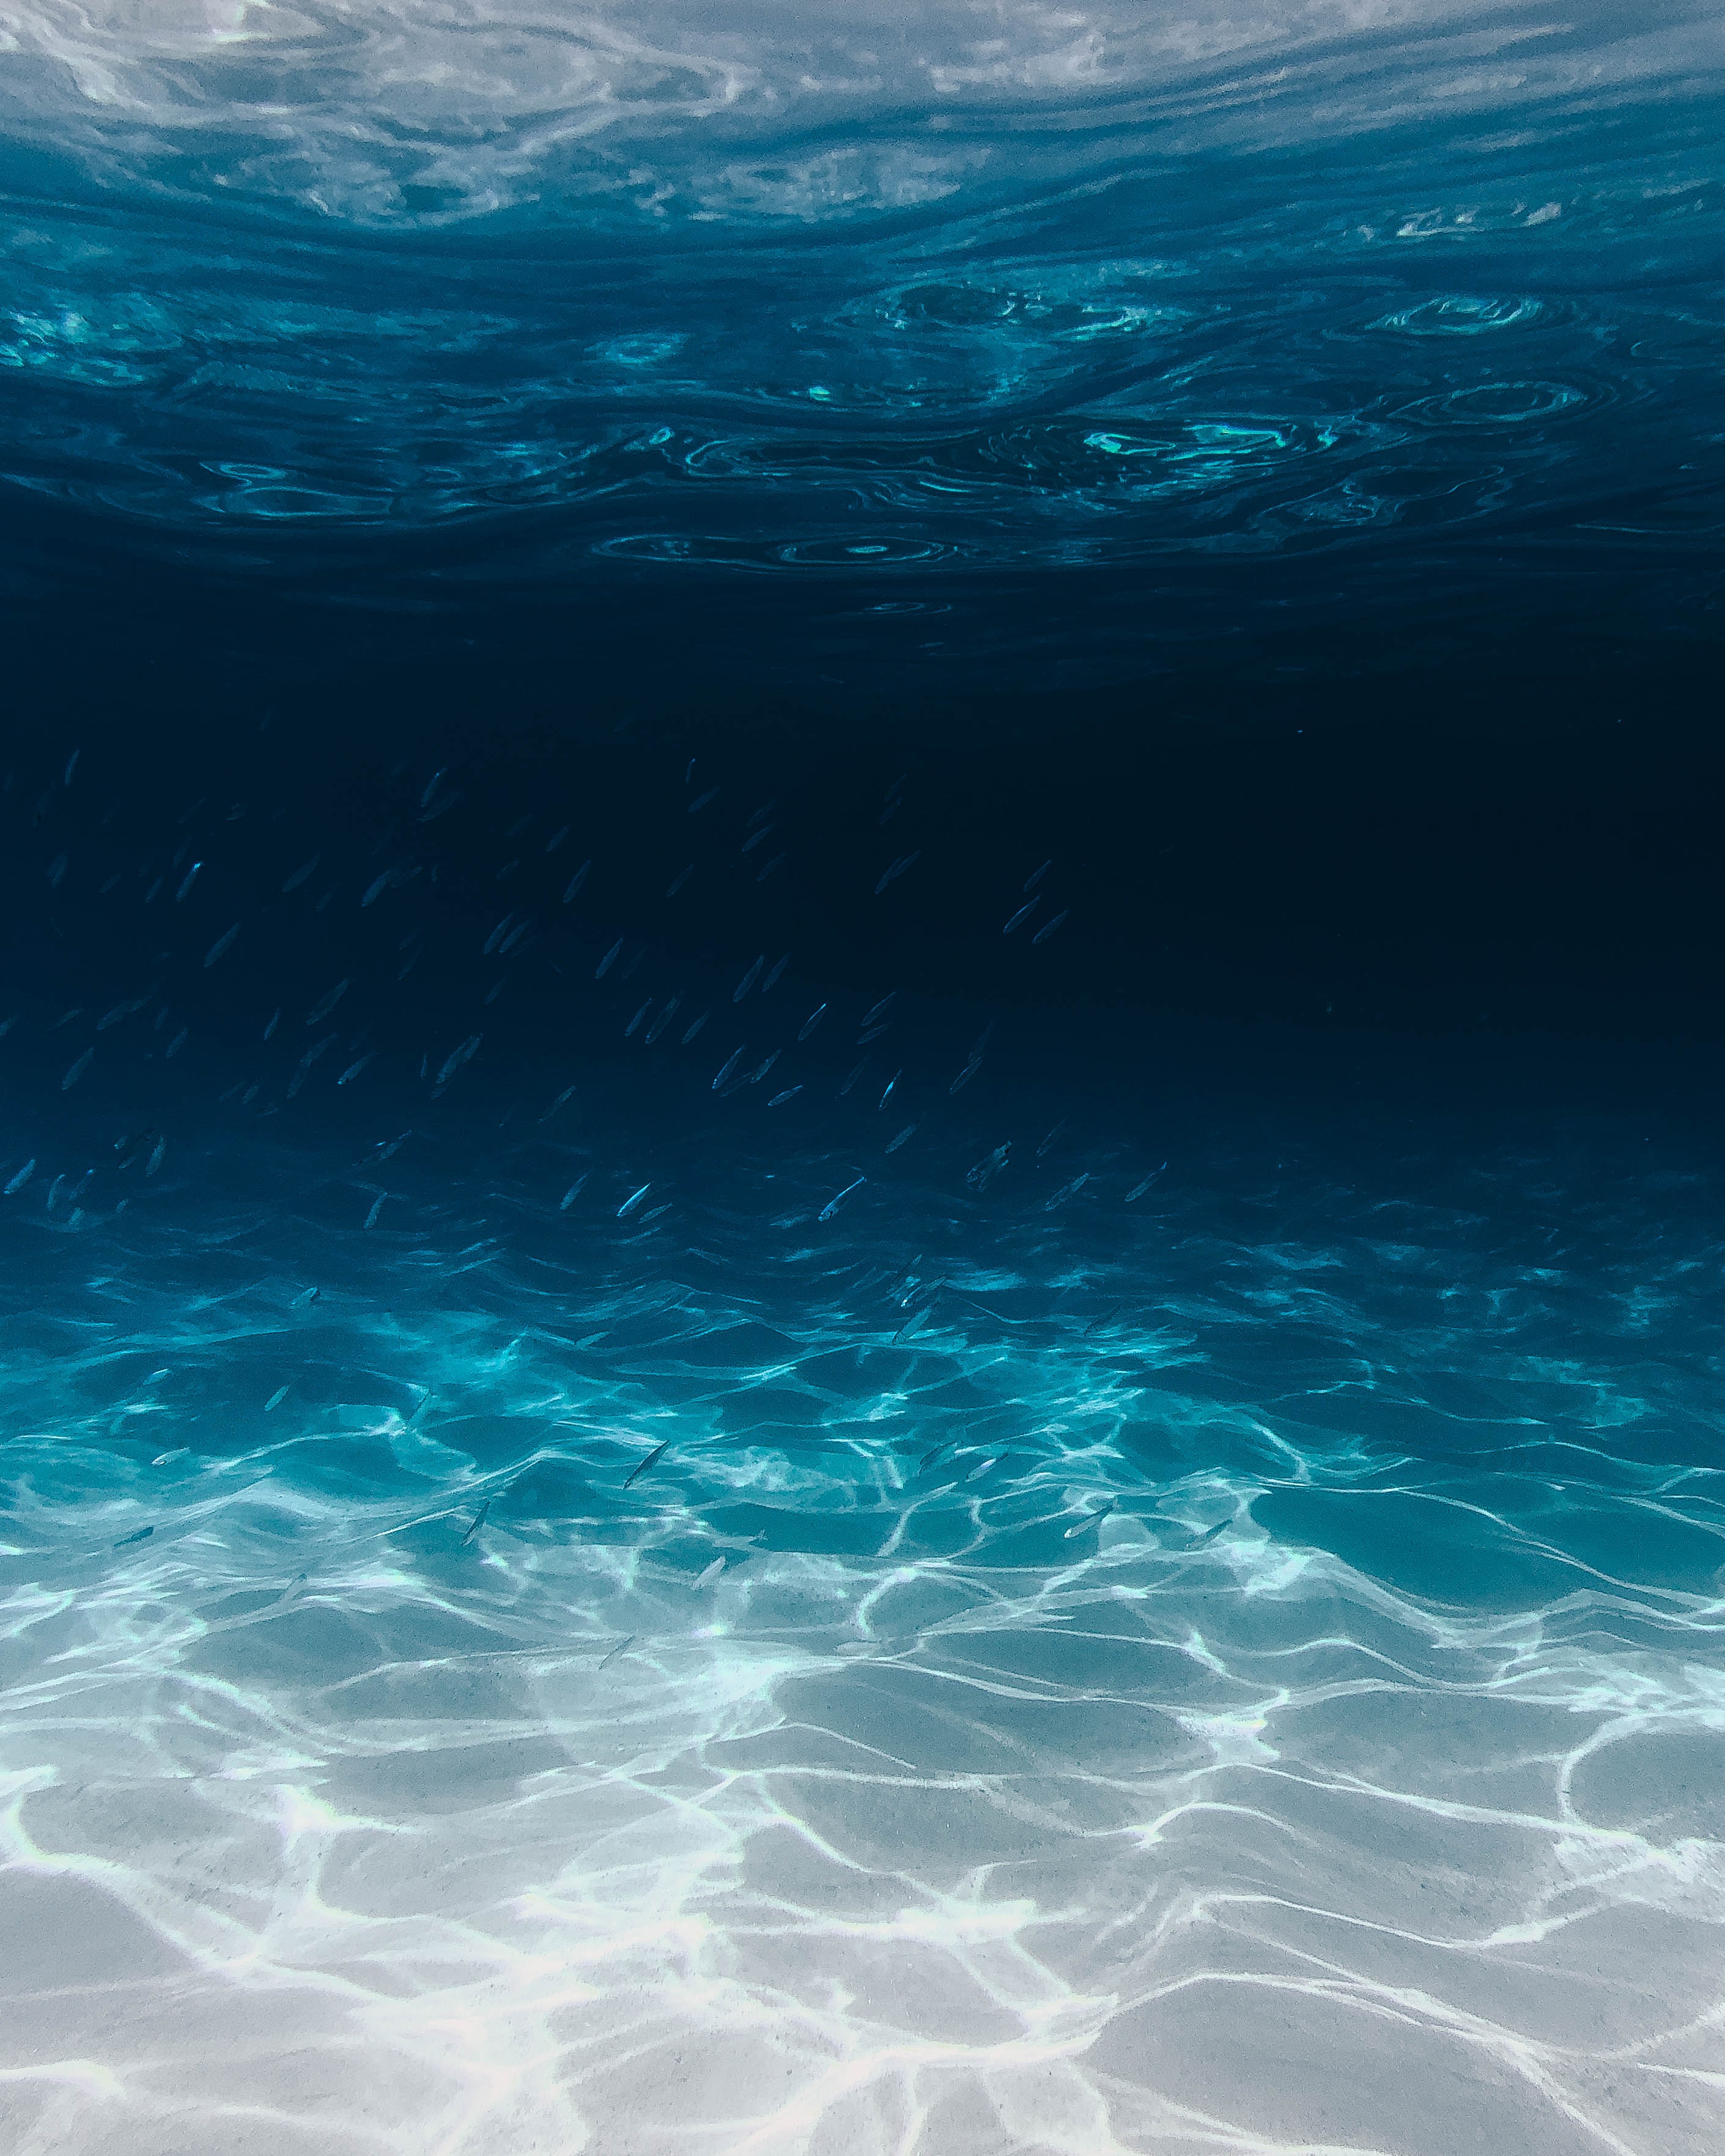 Underwater in the Ocean